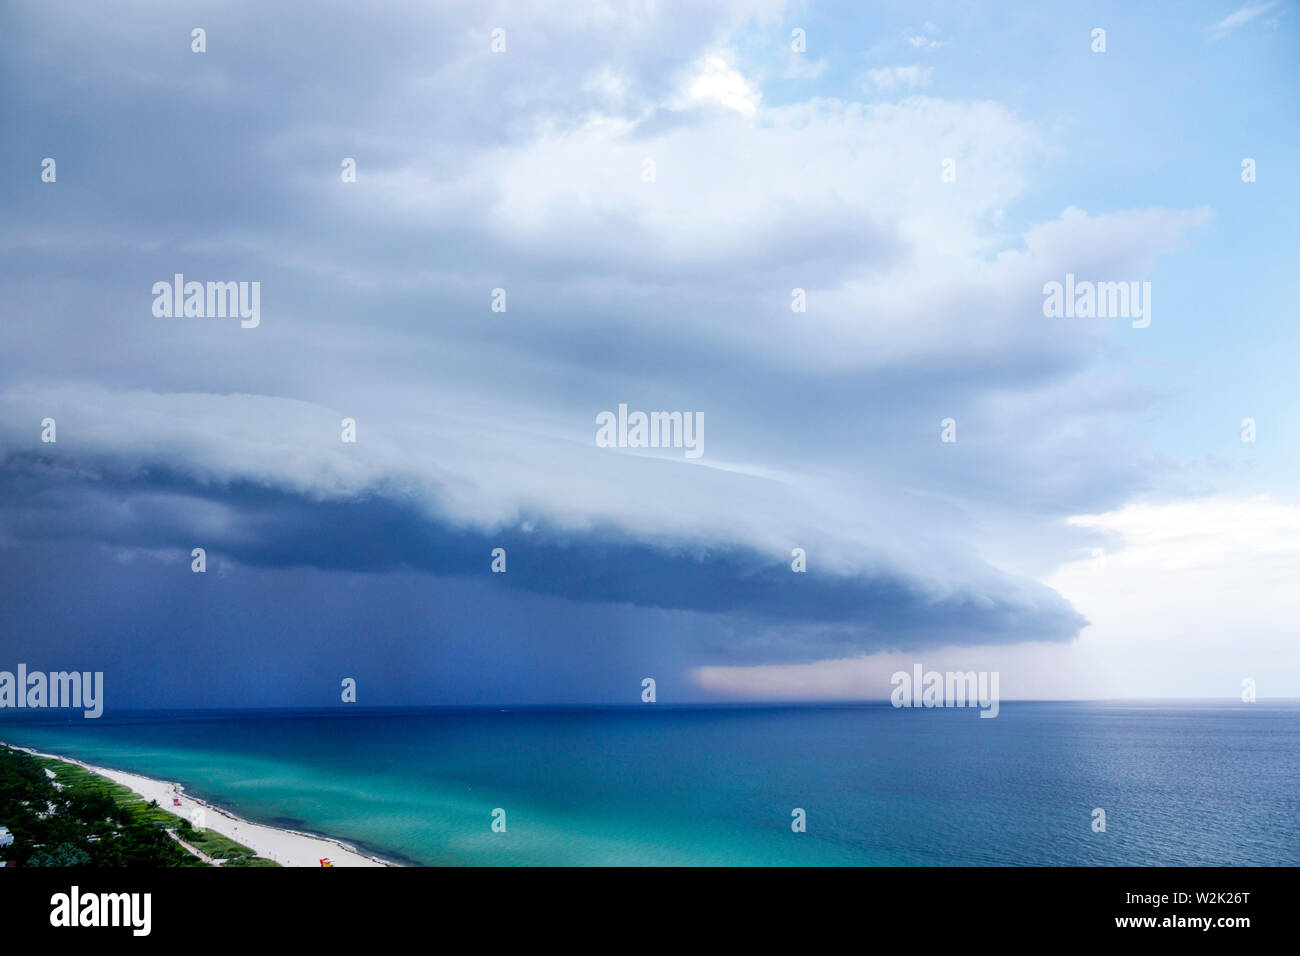 Miami Beach Florida, North Beach, Atlantischer Ozean, Wetterwolken Himmel sturmfront Sturmfront, Arcus Keilregal Wolkenregen, FL190704002 Stockfoto